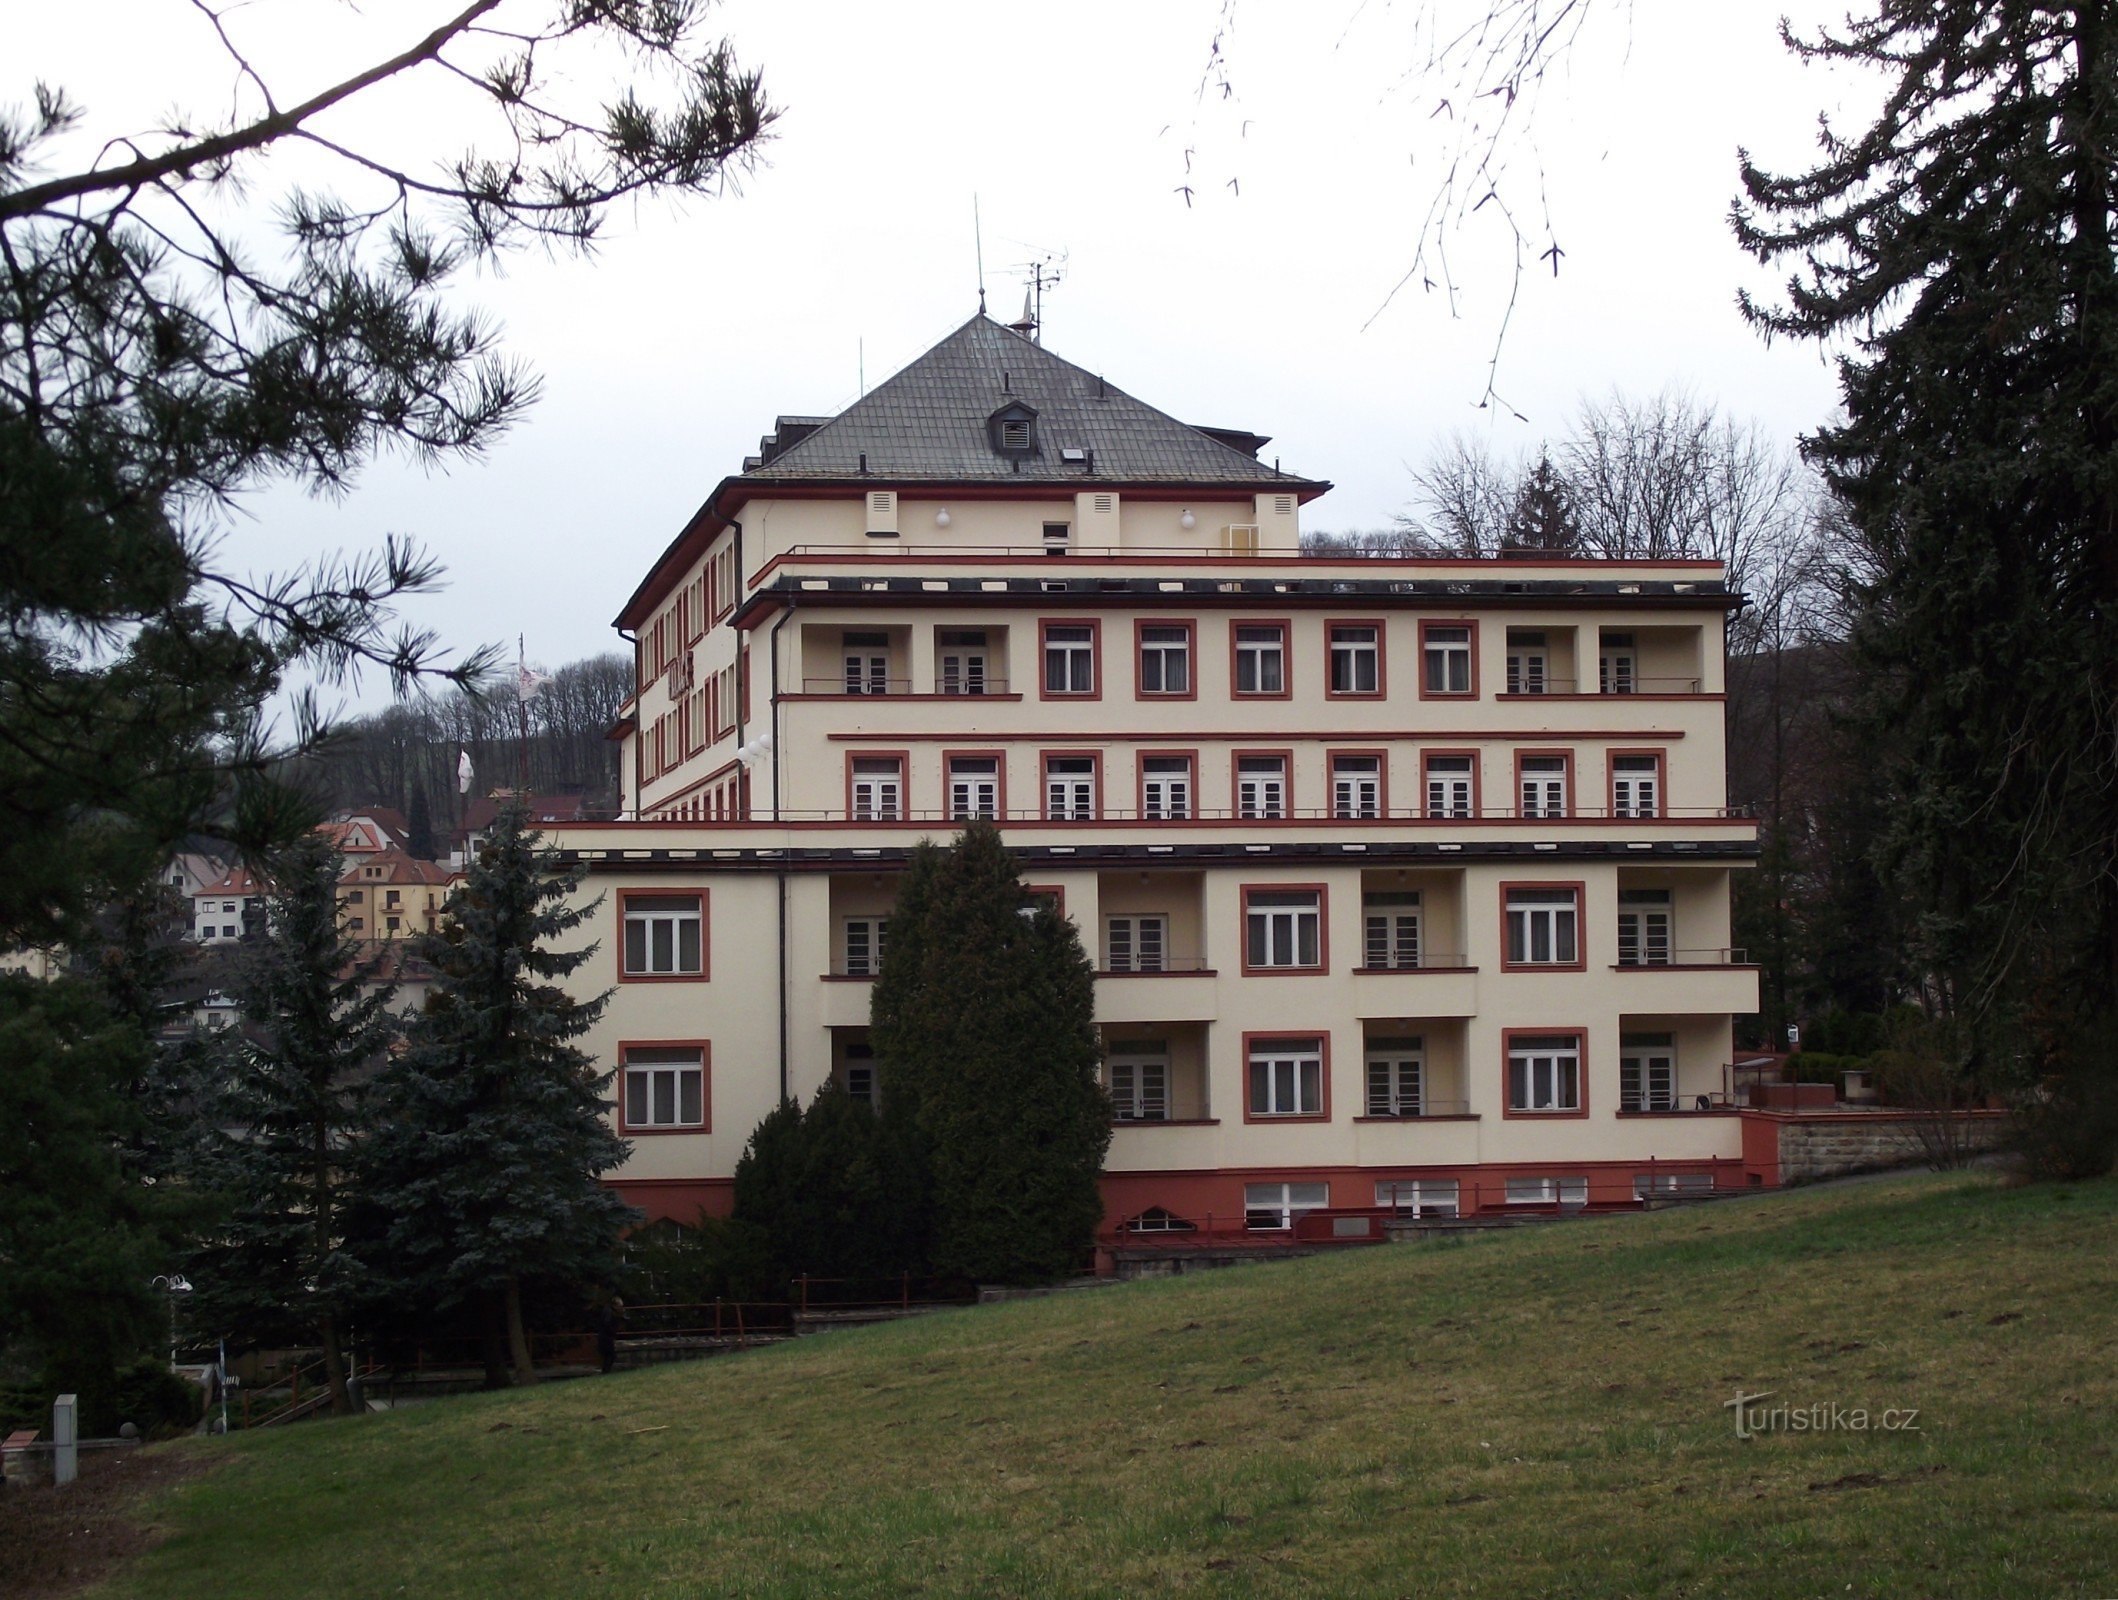 ルハチョヴィツェ – パレス ホテル (Palace Hotel Drtílek)